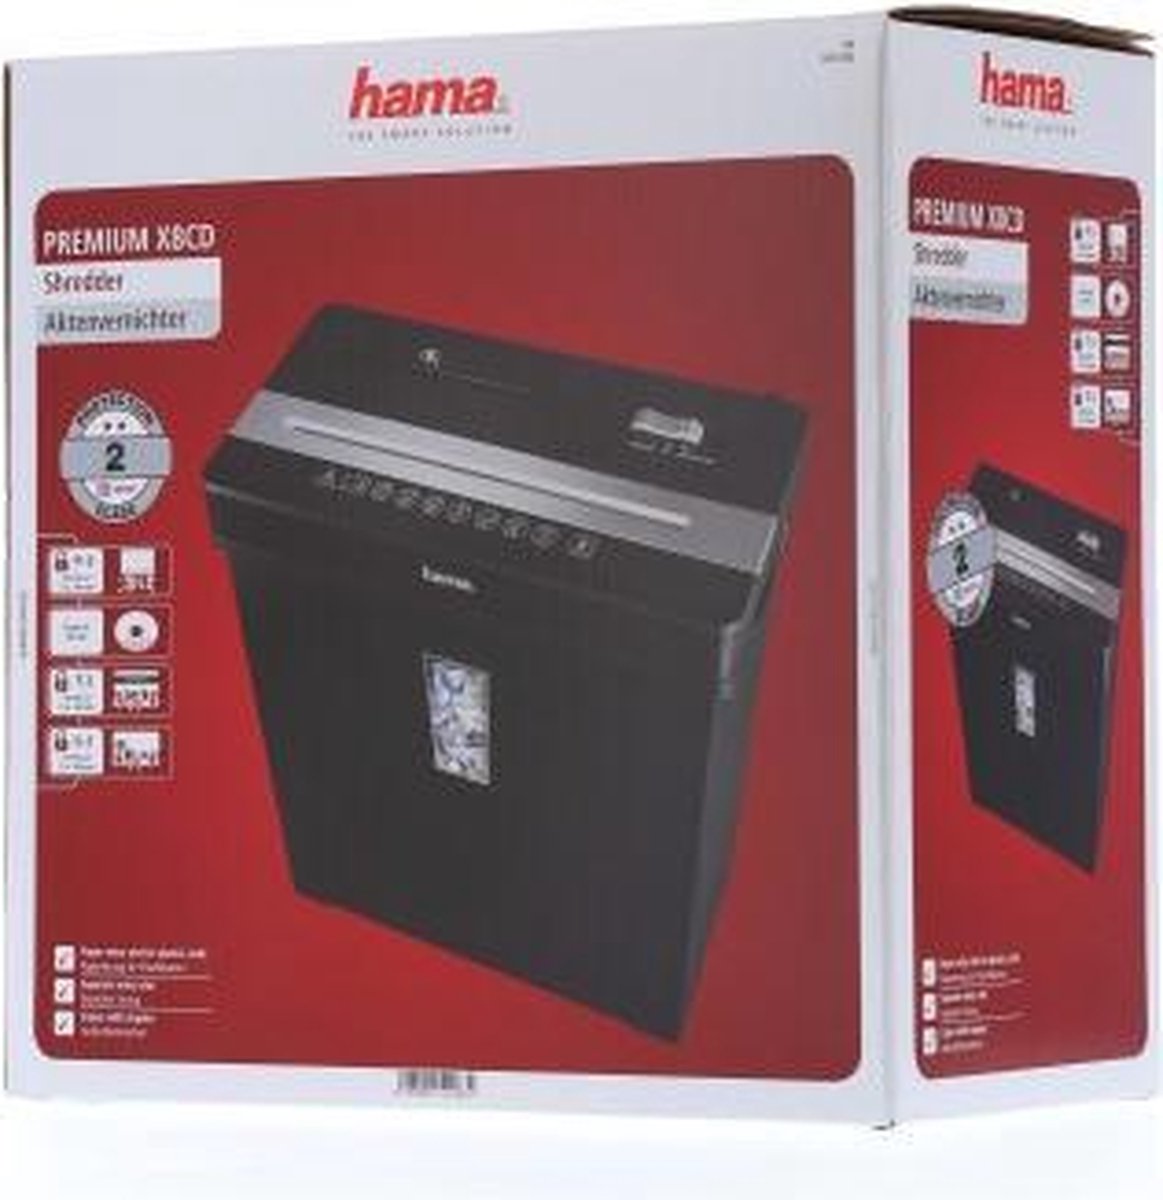 Hama Papier Vernietiger Premium X8CD | bol.com